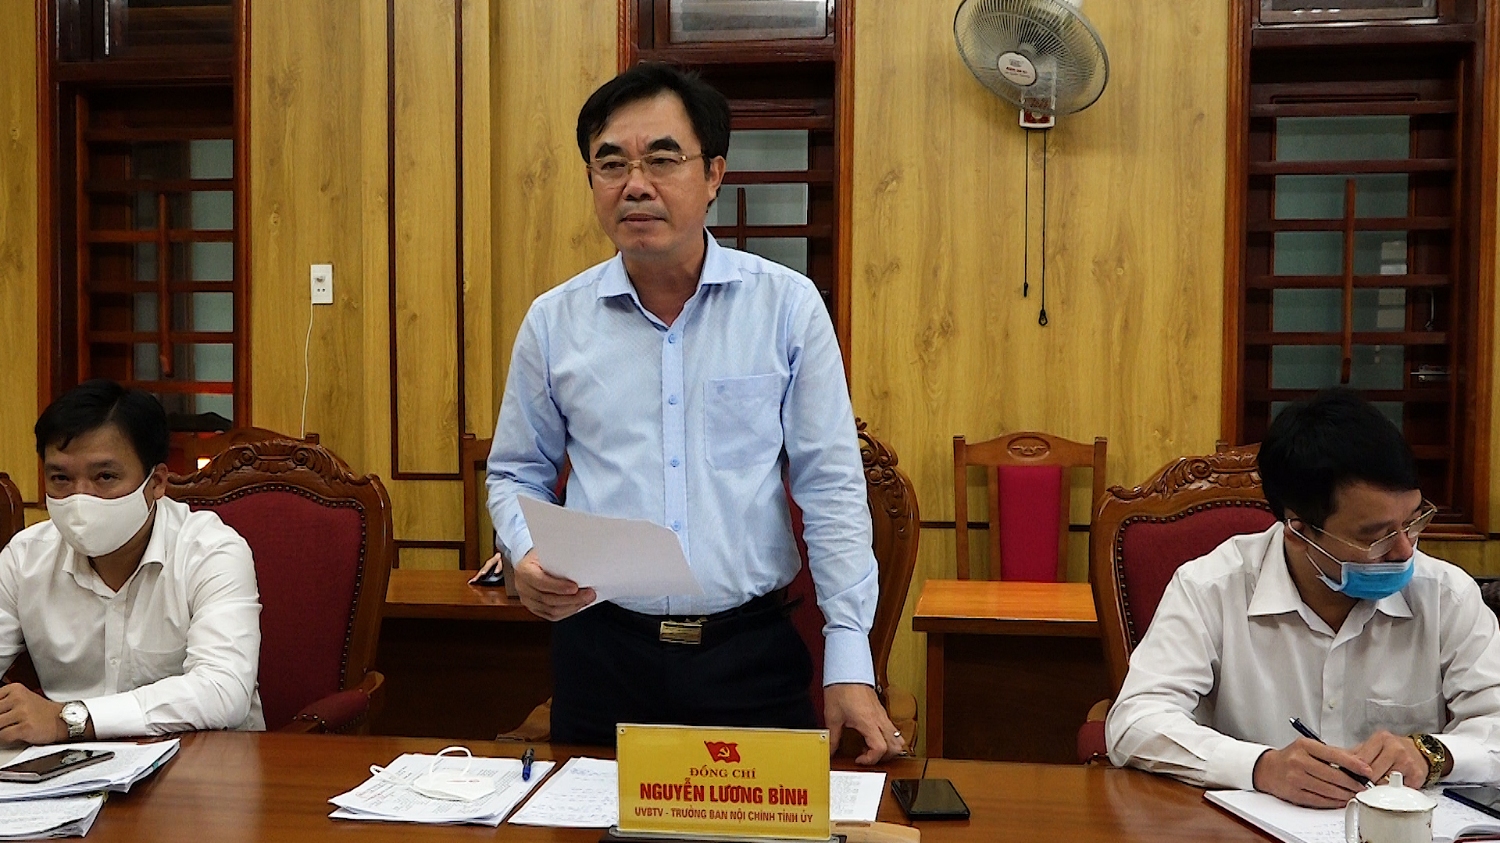 đồng chí Trưởng ban Nội chính Tỉnh ủy Nguyễn Lương Bình phát biểu kết luận buổi làm việc